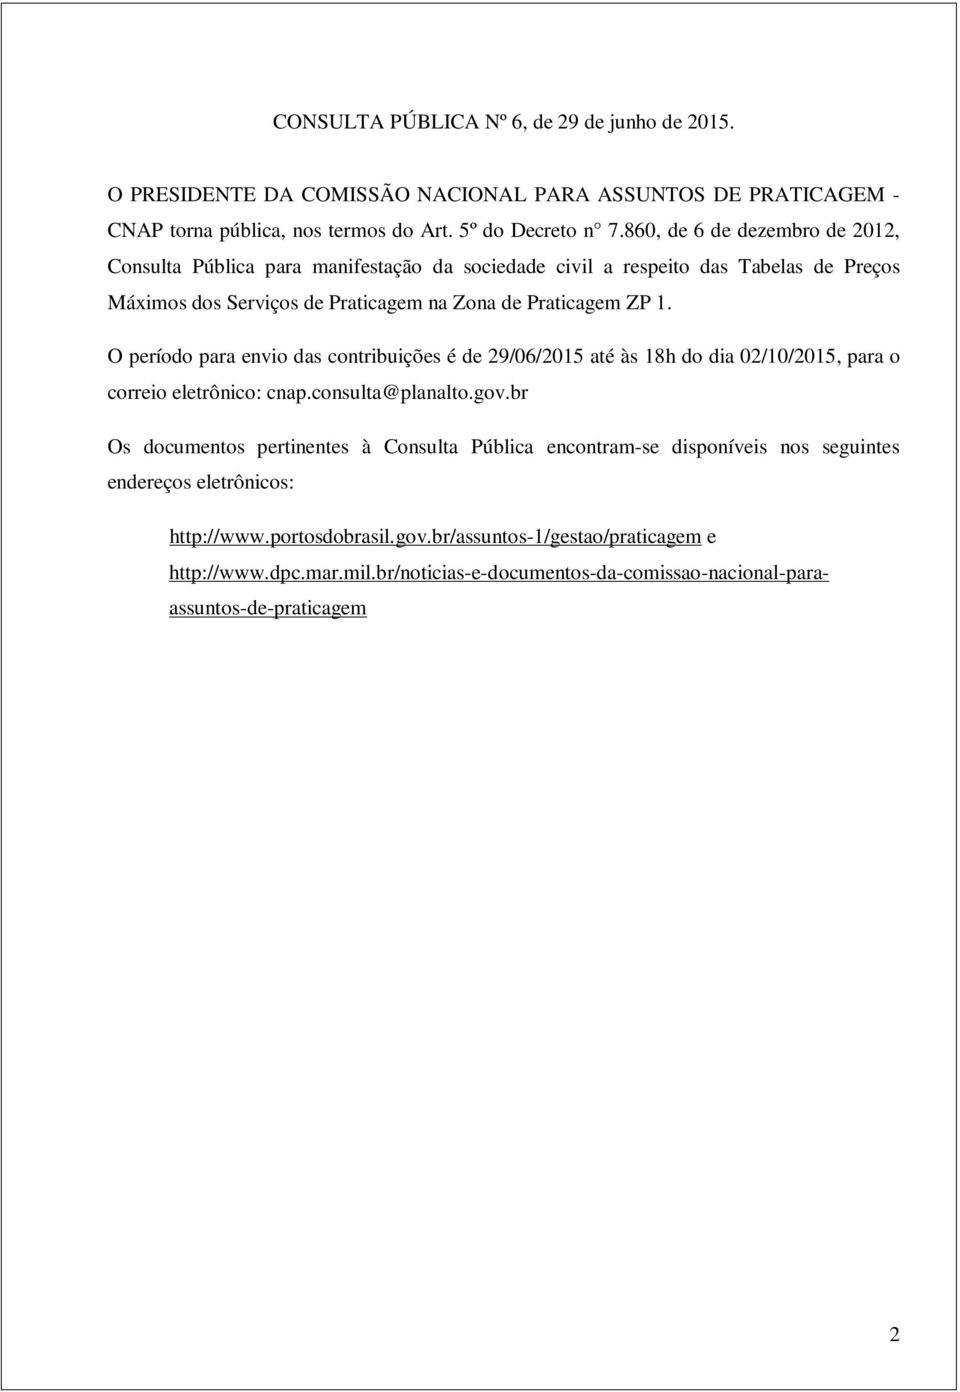 O período para envio das contribuições é de 29/06/2015 até às 18h do dia 02/10/2015, para o correio eletrônico: cnap.consulta@planalto.gov.